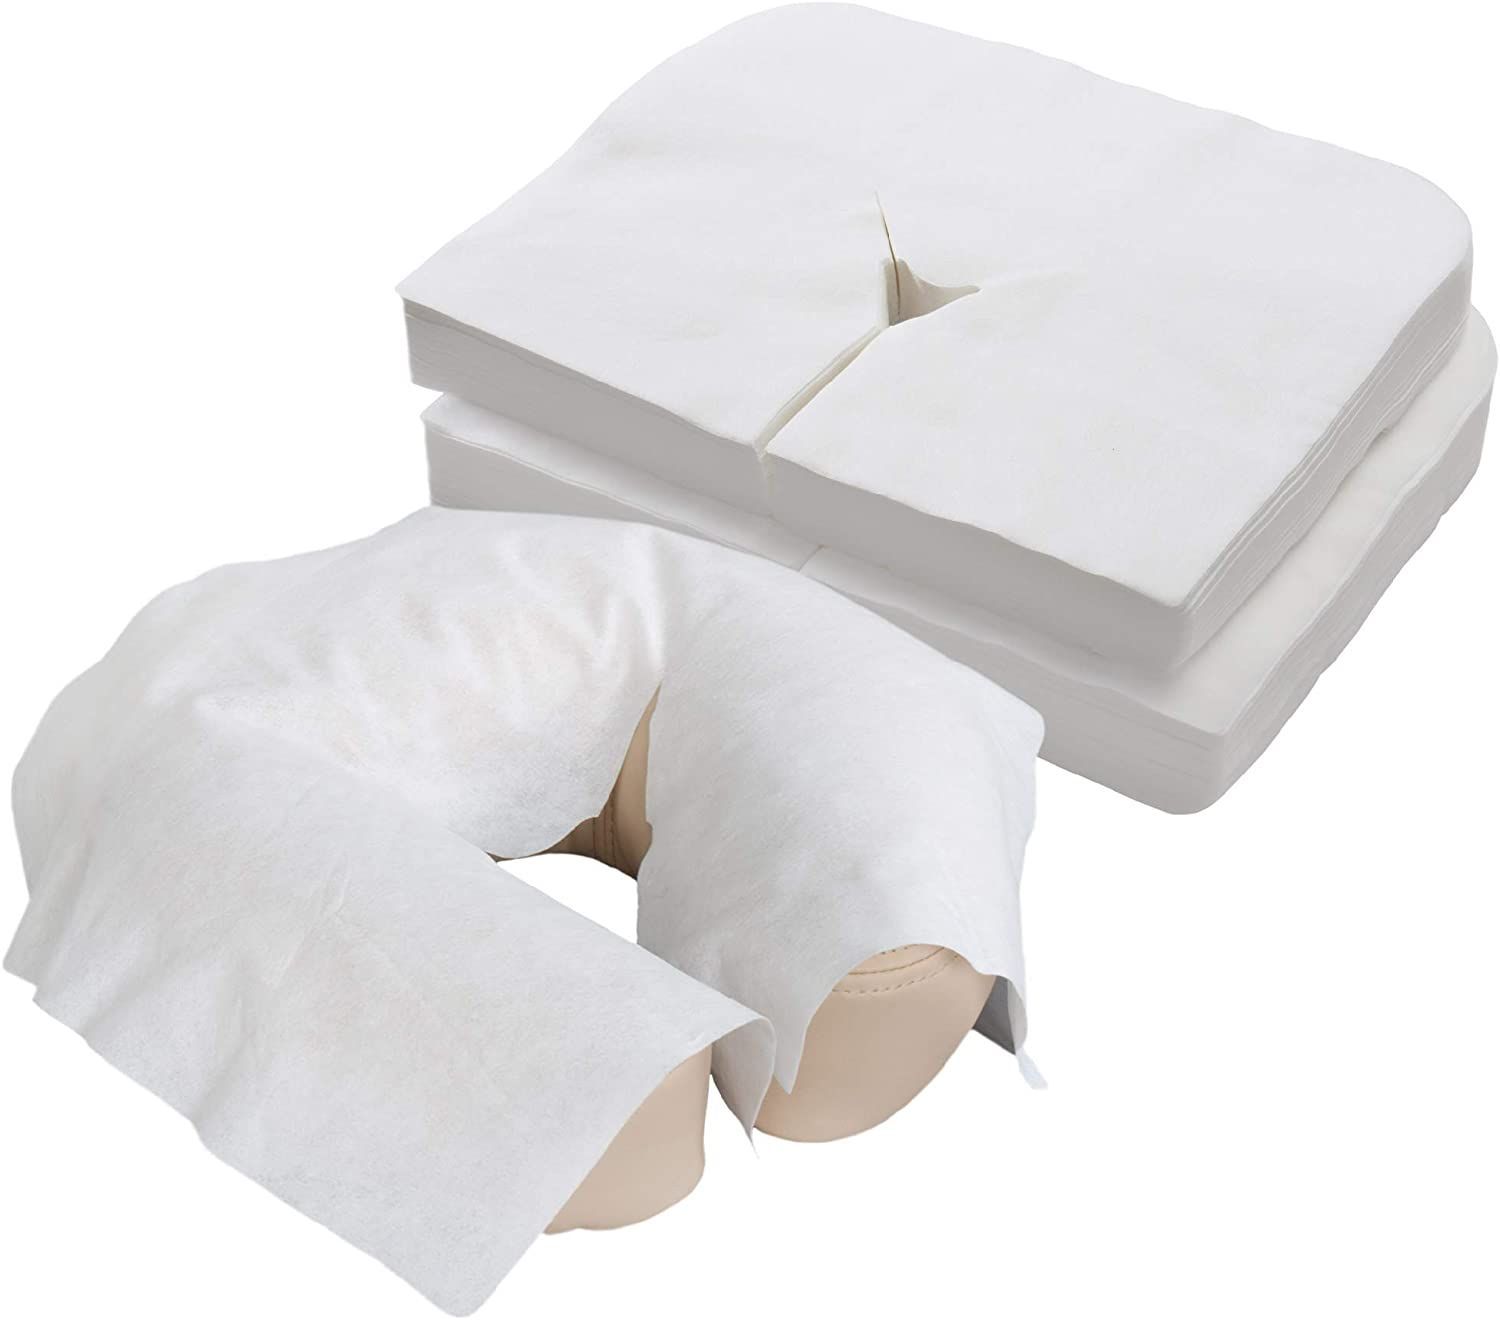 силиконовая подушка для массажного стола с дыркой для лица